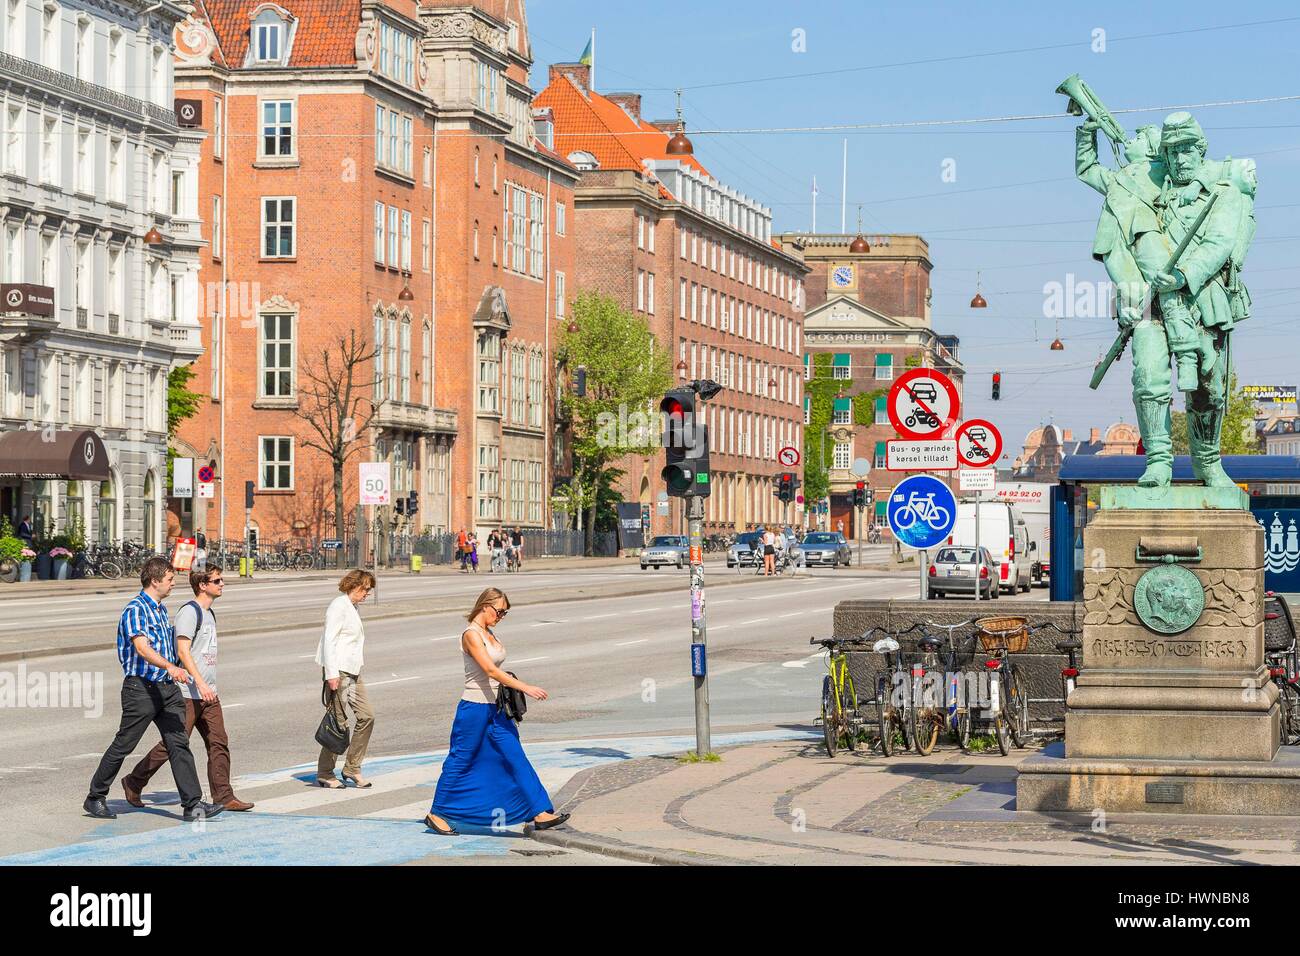 La Danimarca, la Zelanda, Copenaghen, downtown, Boulevard H. C. Andersens, tardo XIX secolo arteria con una statua commemorativa per guerre di 1848 e 1864 Foto Stock